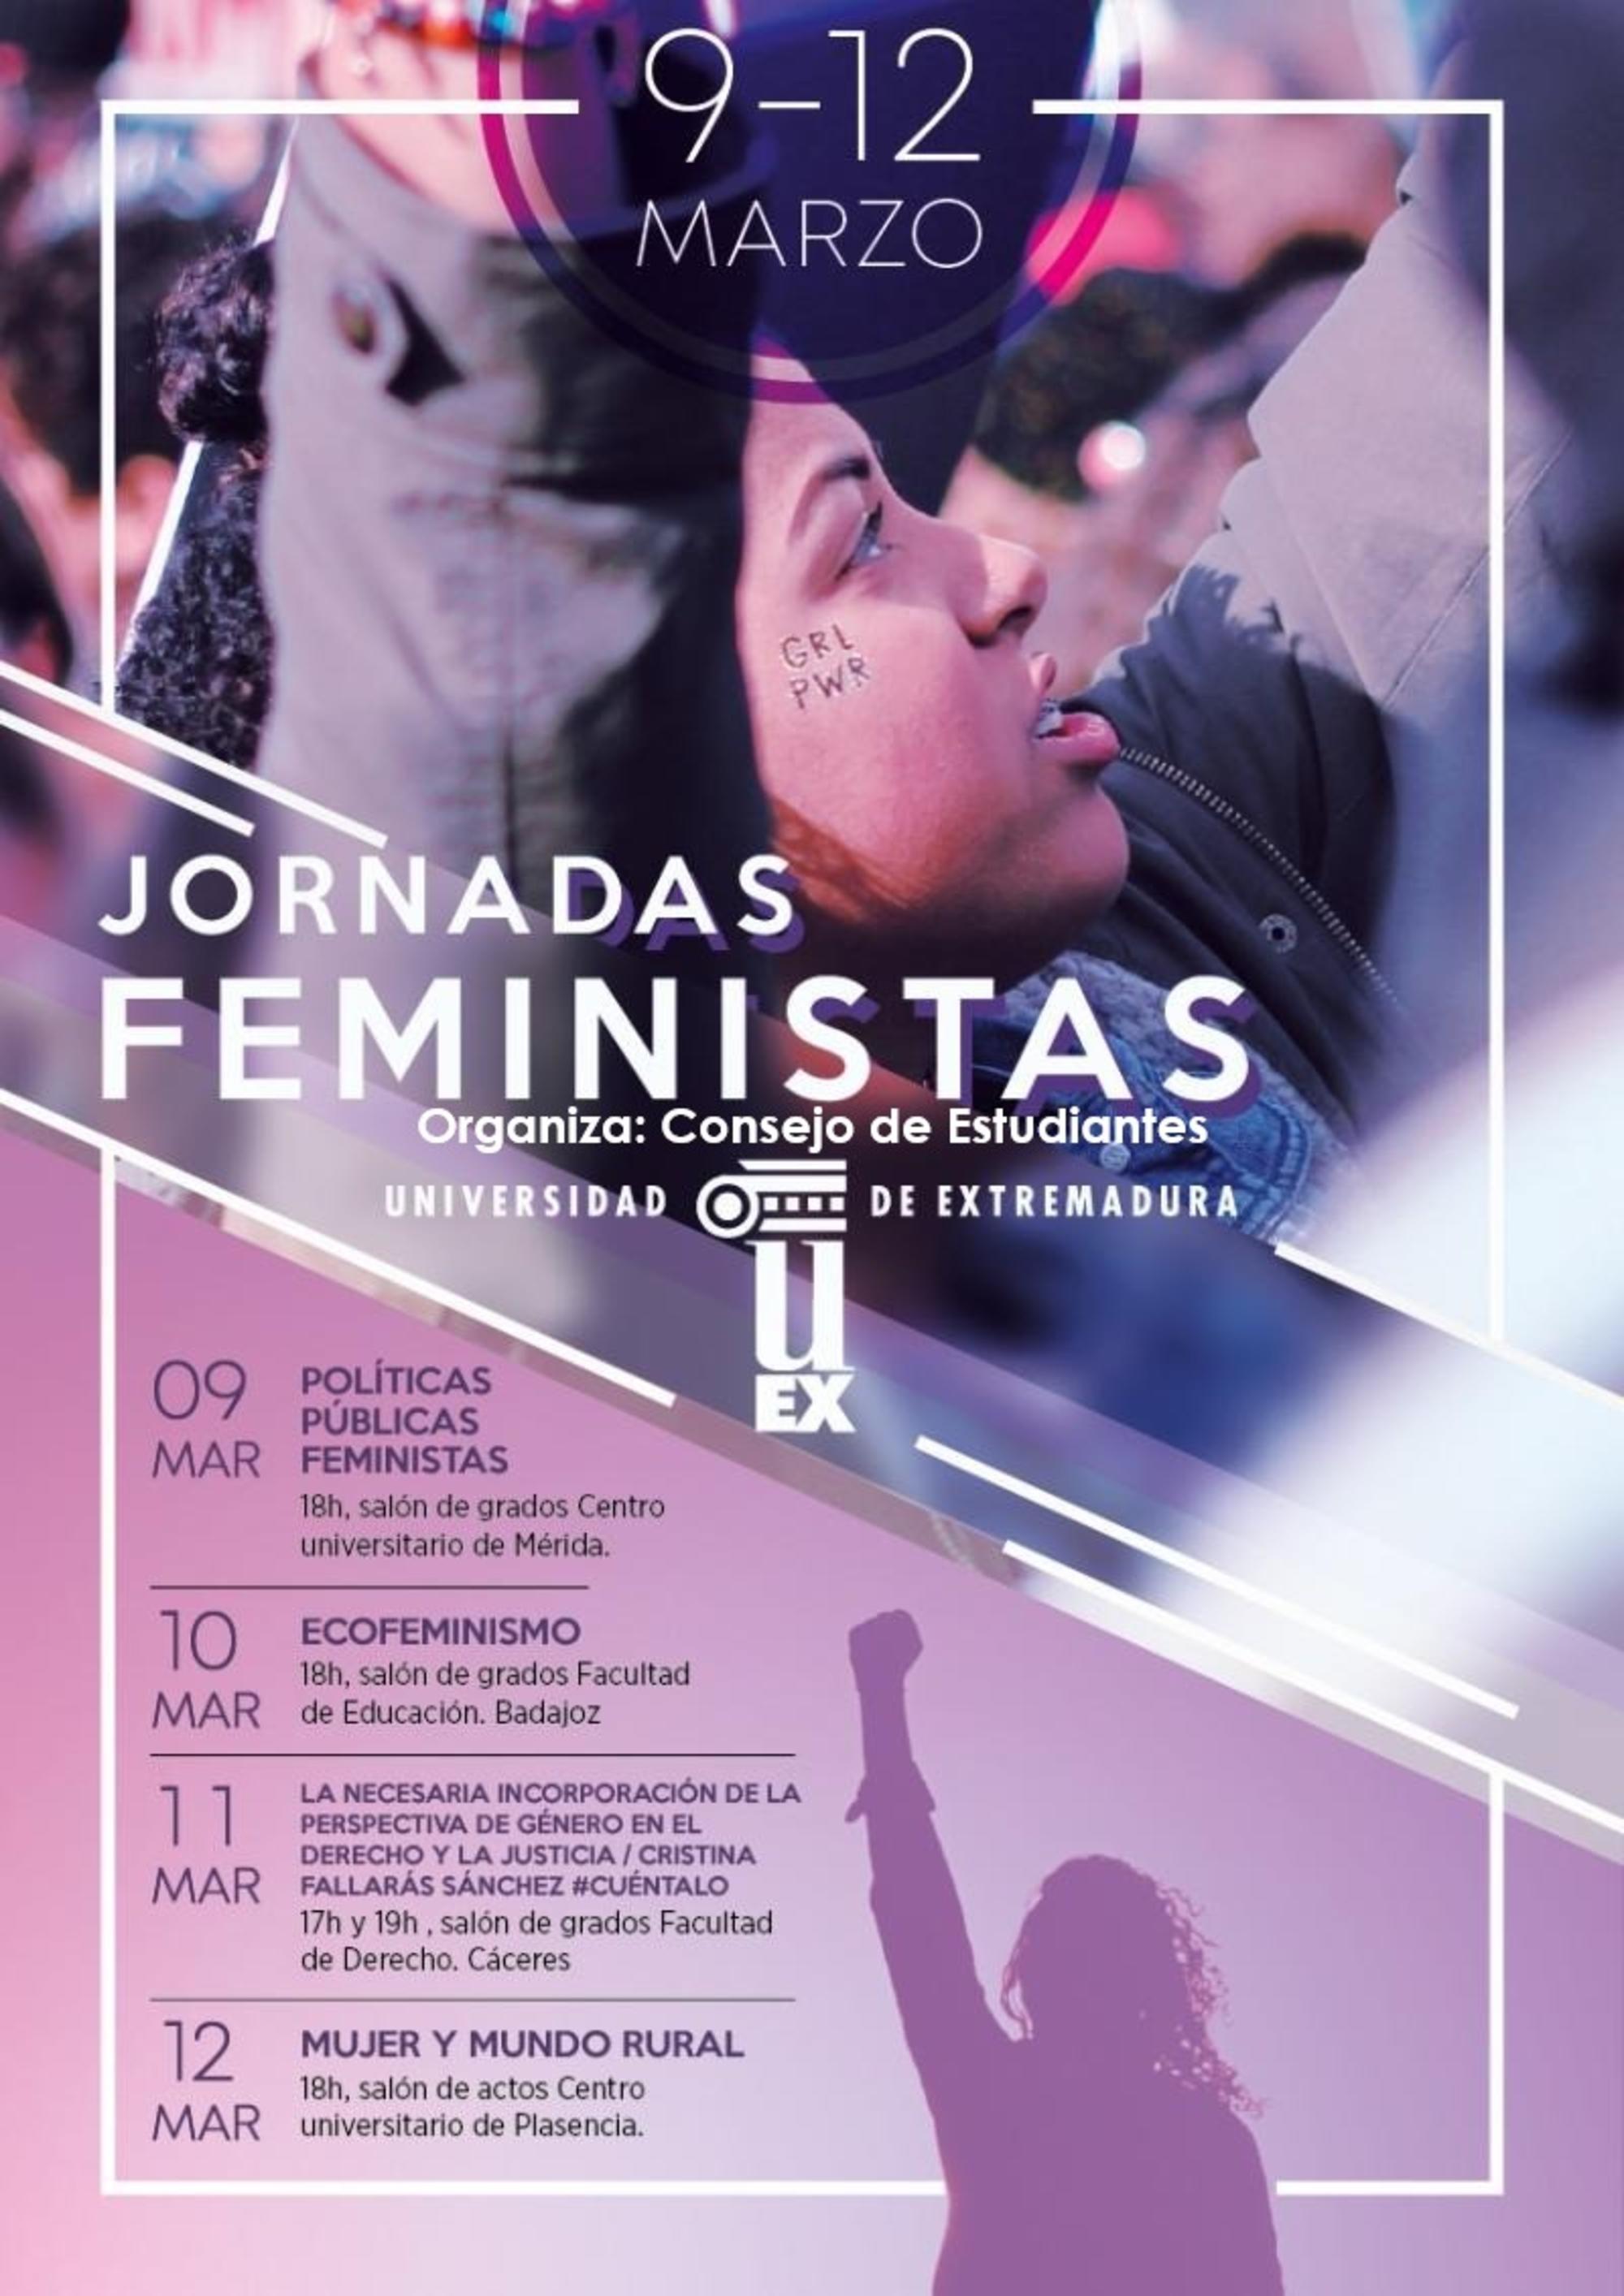 Jornadas feministas uex 2